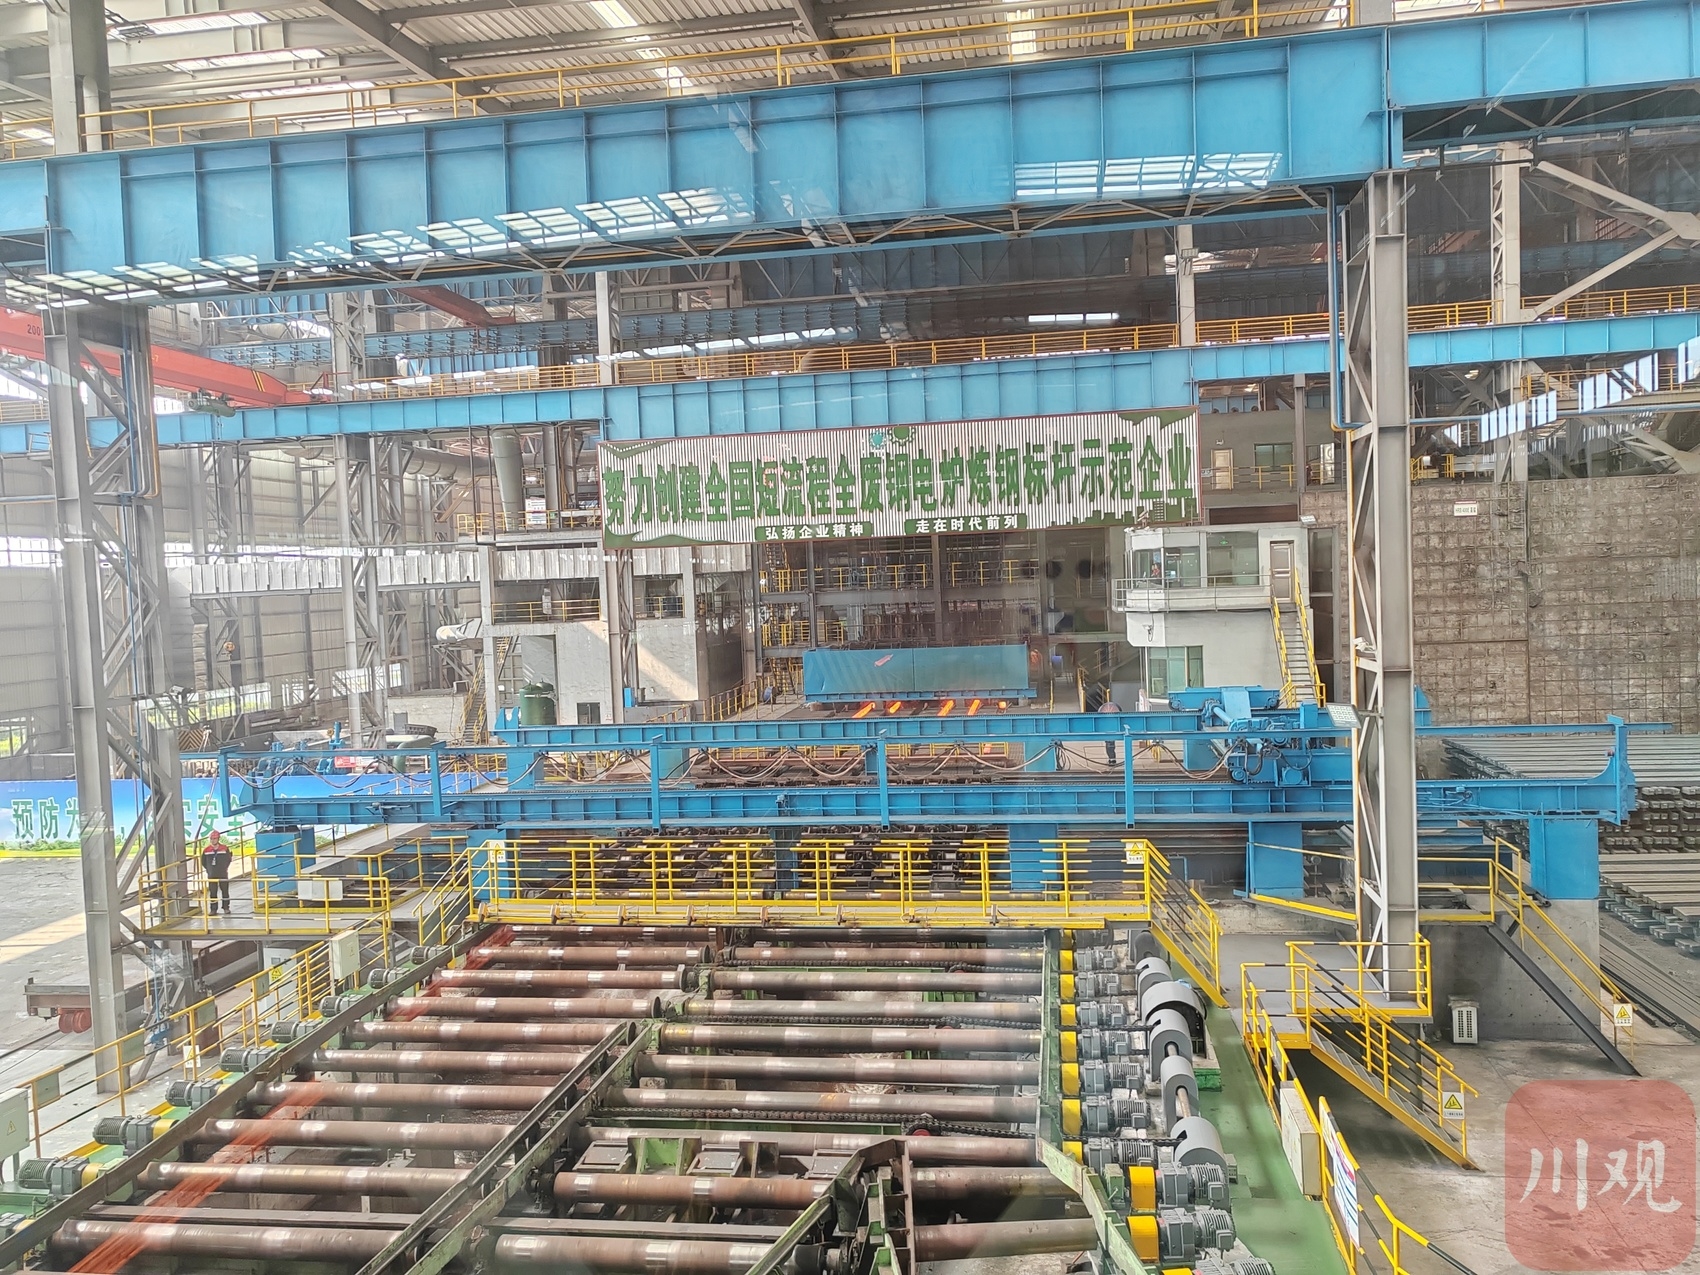 泸州鑫阳钒钛钢铁有限公司生产车间。史晓露 摄